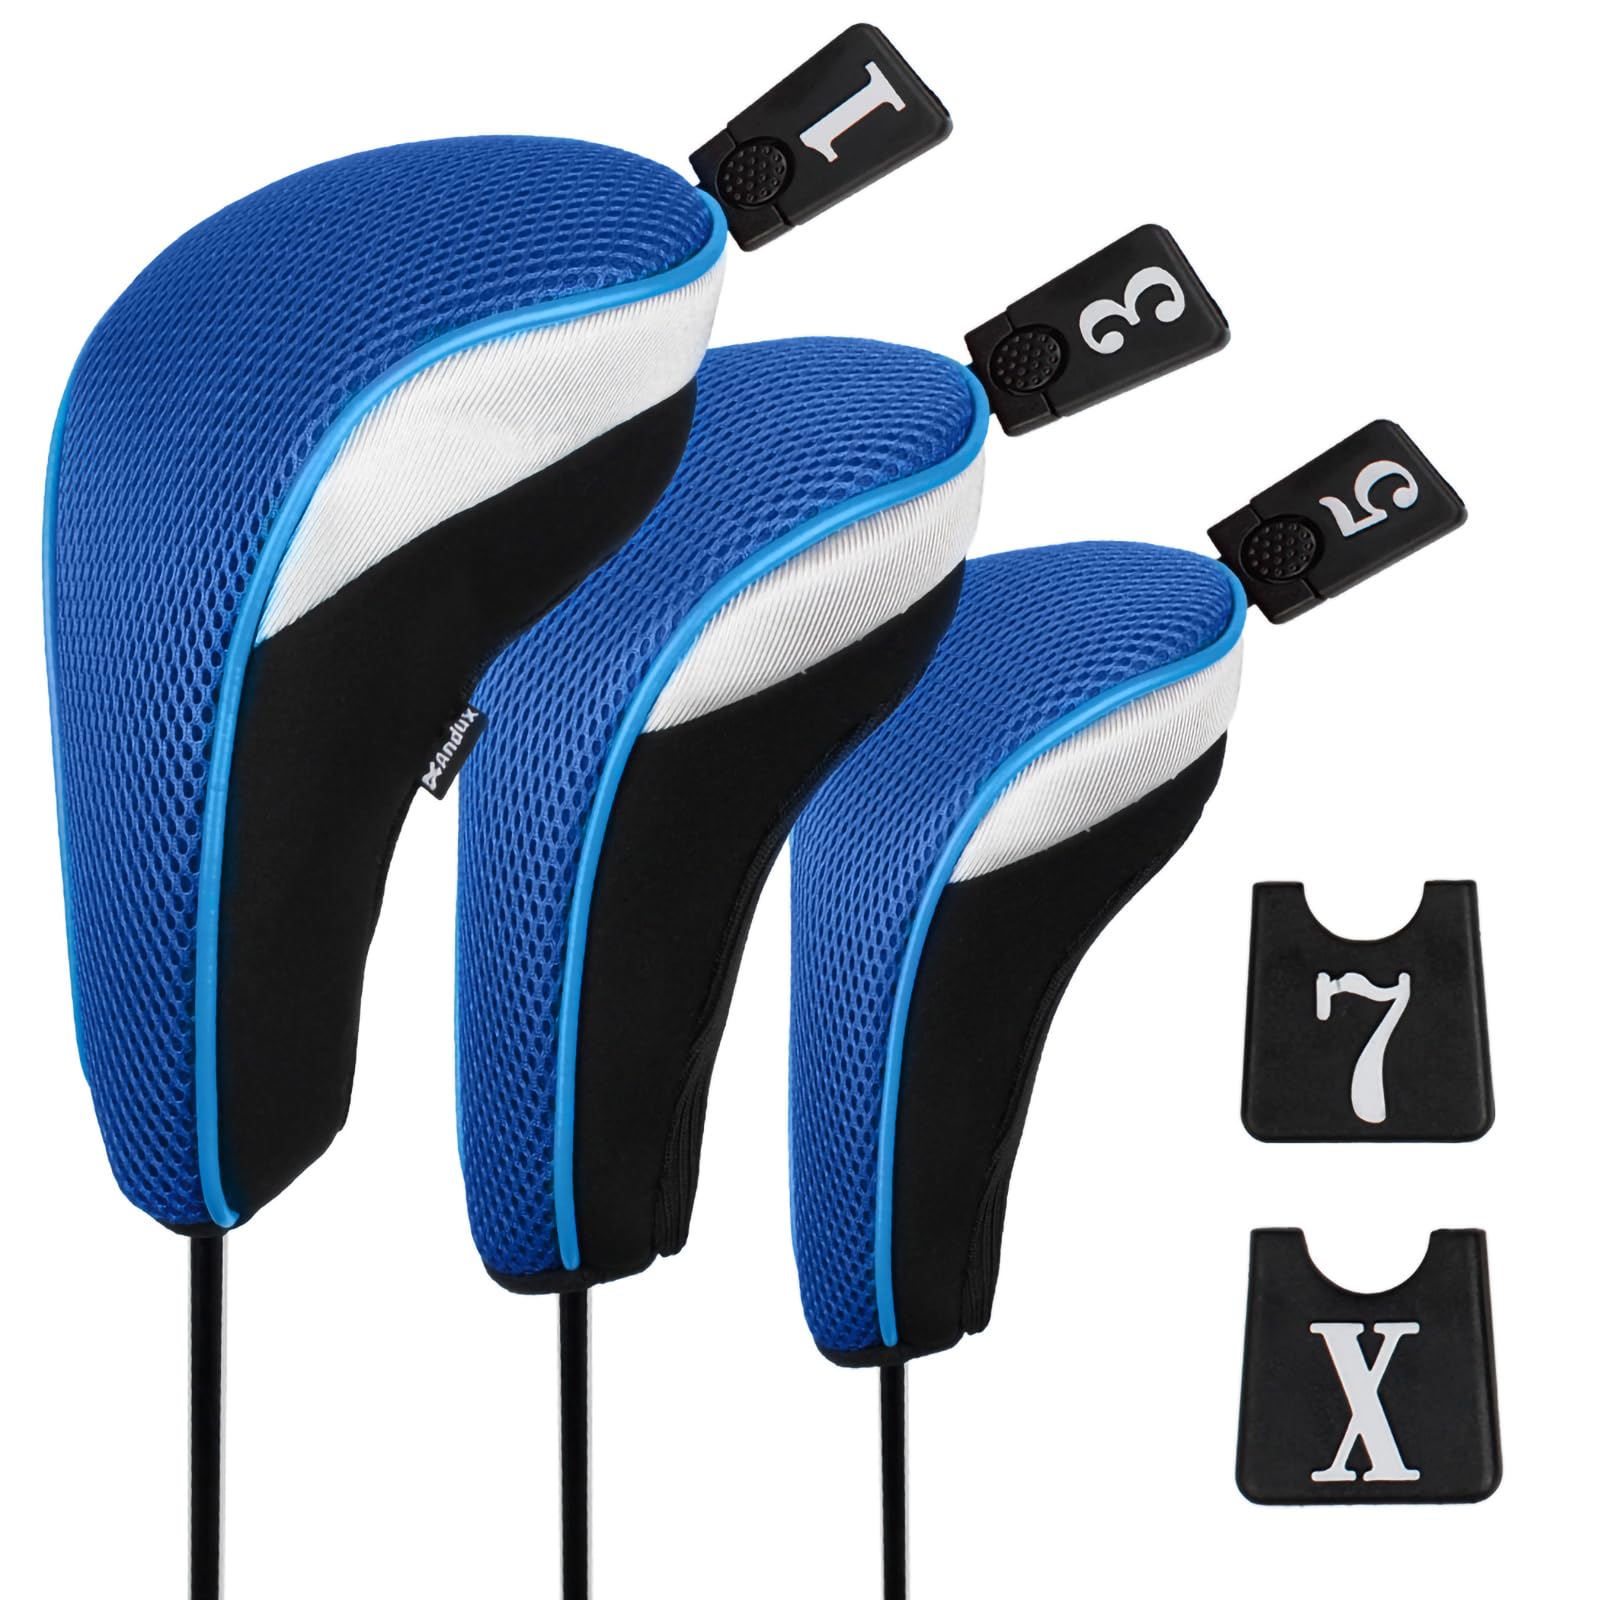 Andux Golf 460cc Driver Kopfhüllen Golfschläger Holzkopfhüllen 3 Stück Blau